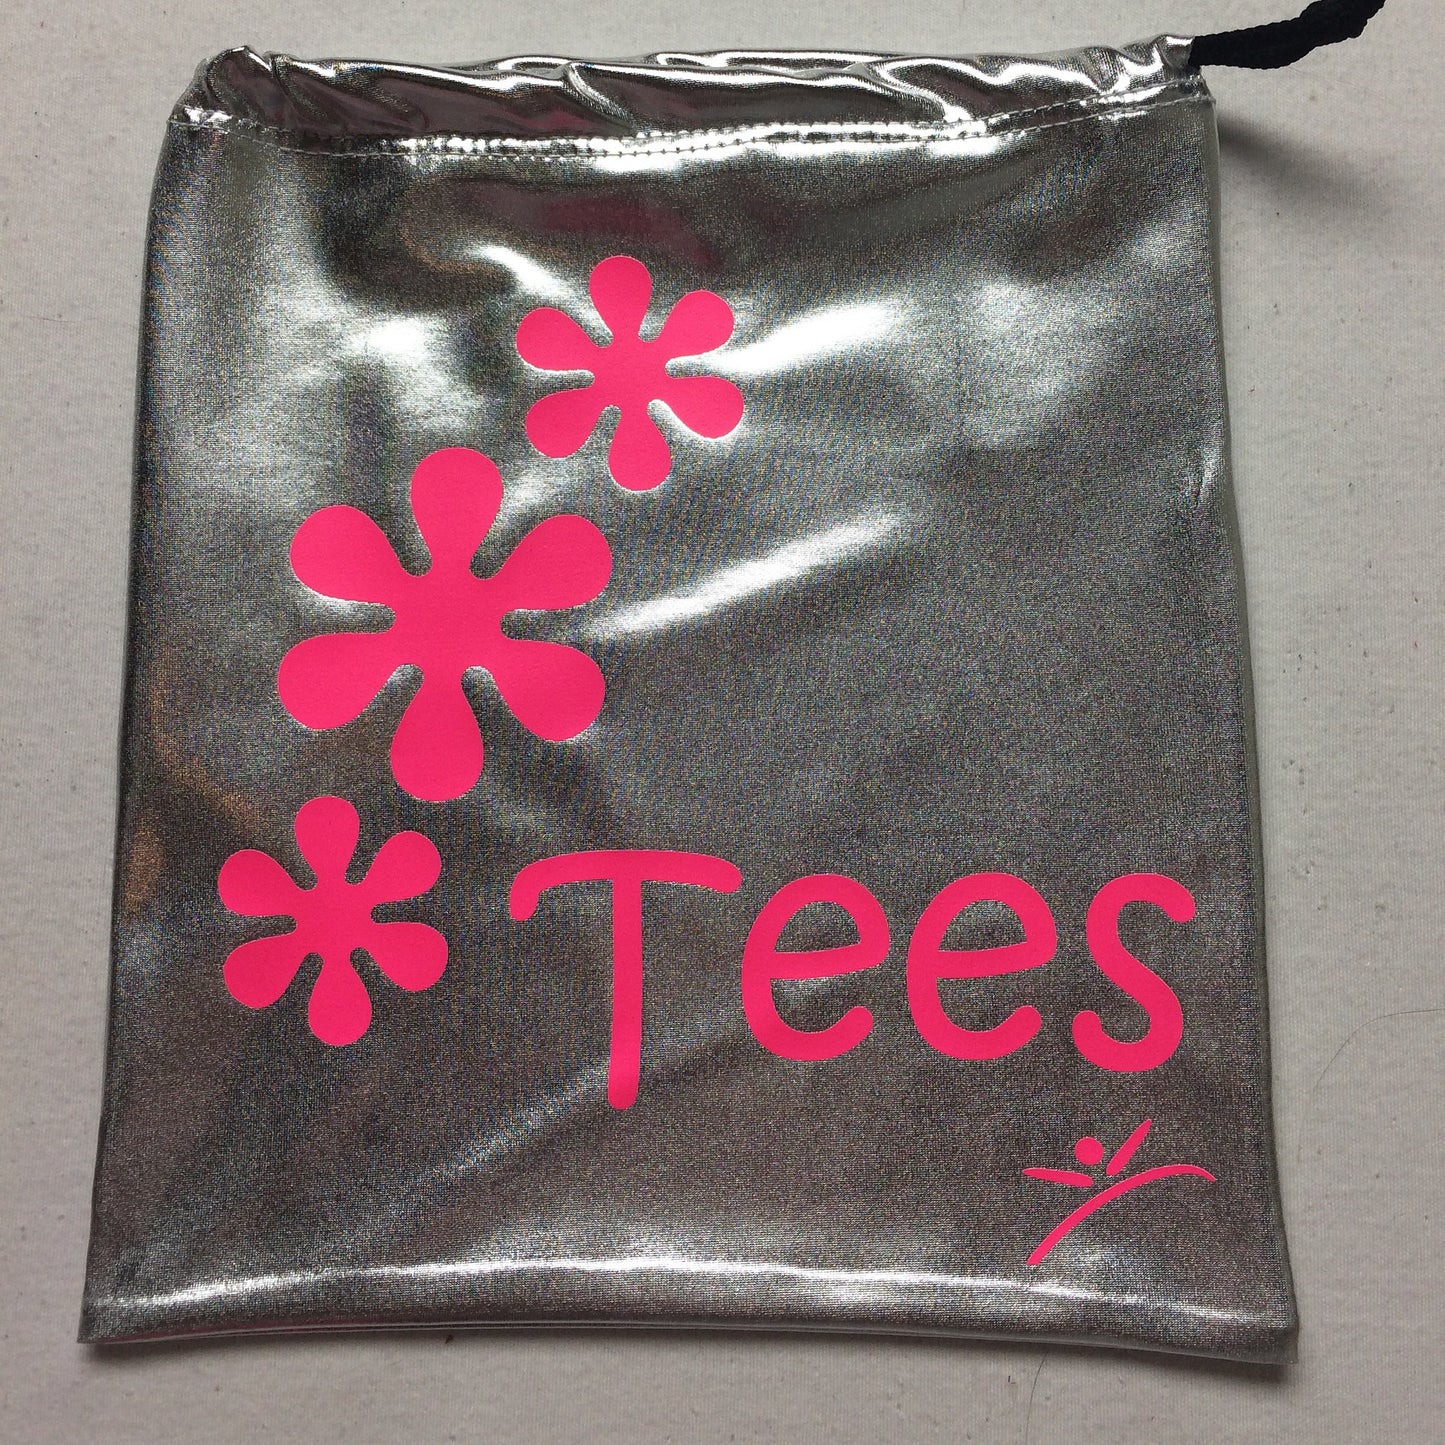 Golf flower power bag for tees